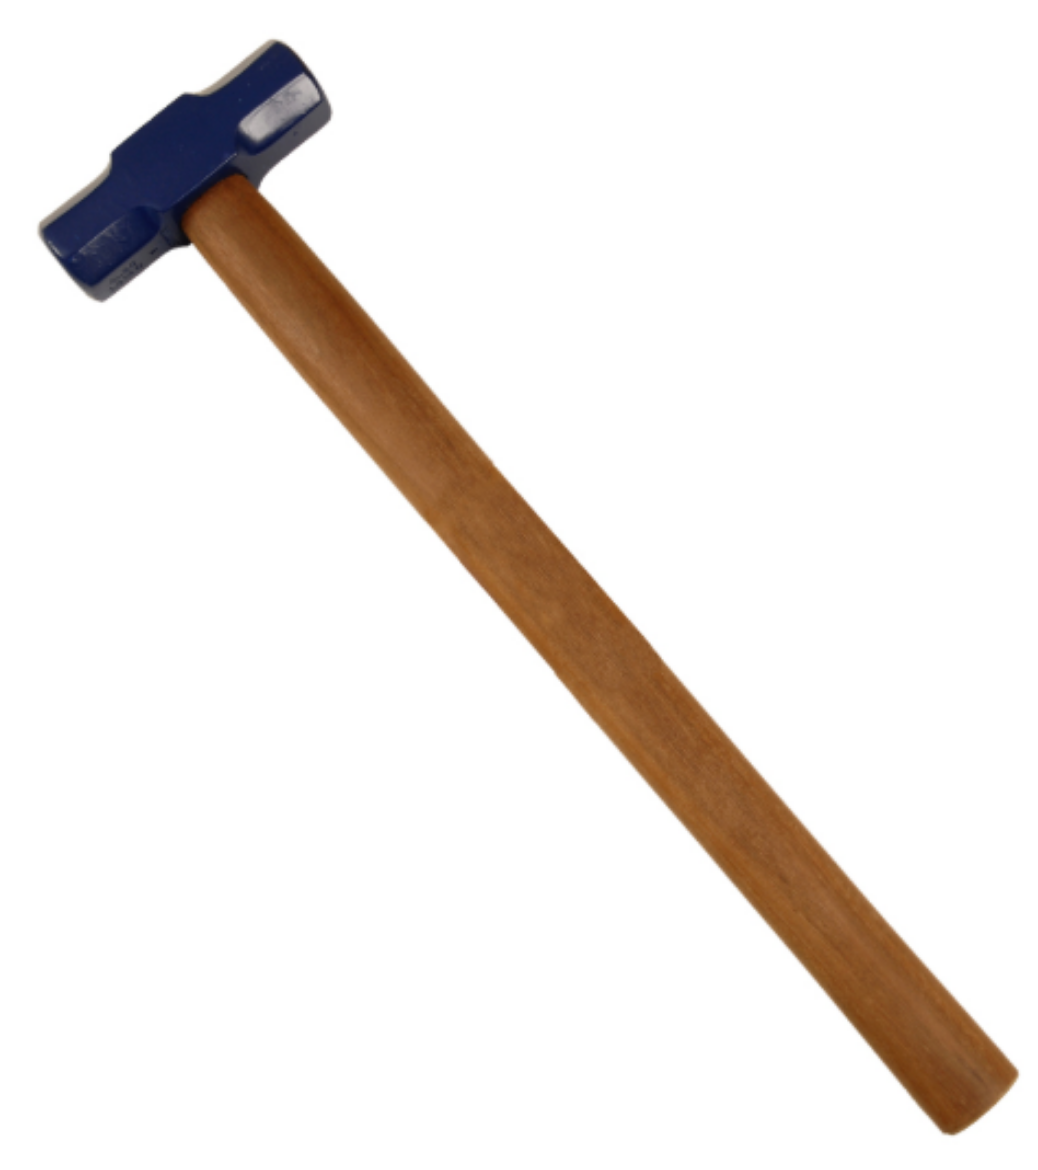 Picture of Sledge Hammer 10lb/4.5kg, Hardwood Handle 900mm